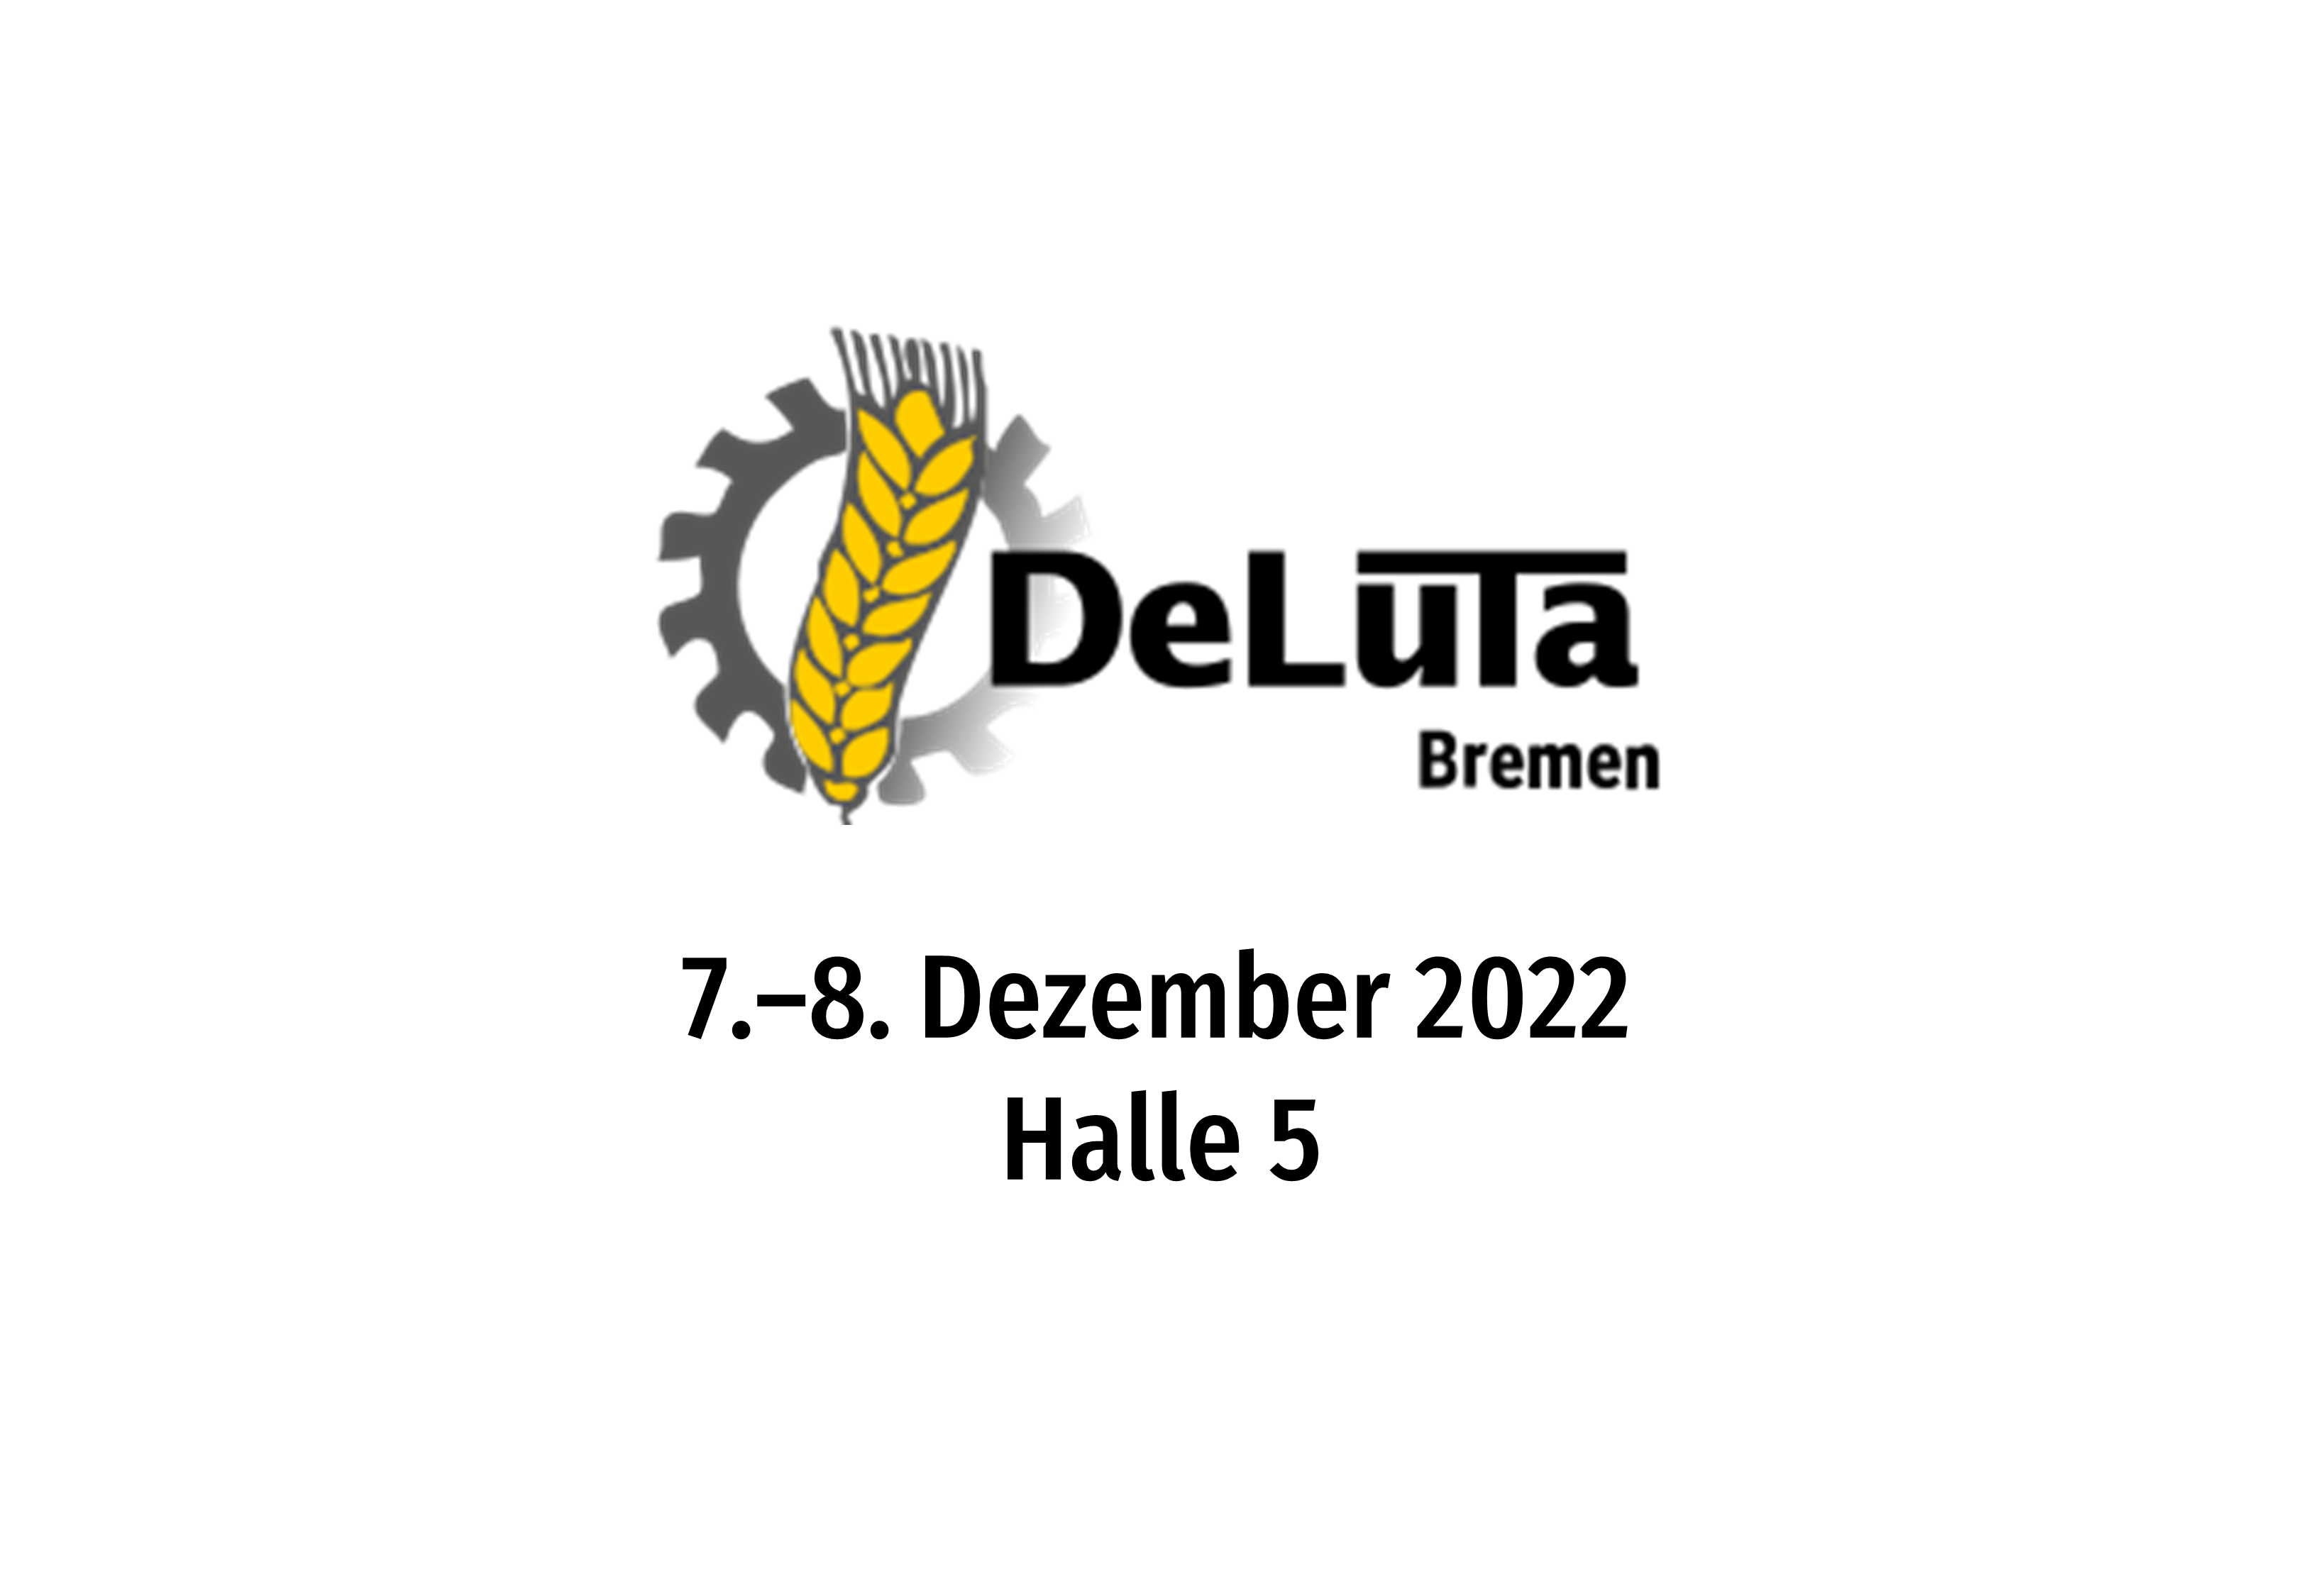 DeLuTa-deluta-2022-f.x.s.-sauerburger-messe-bremen